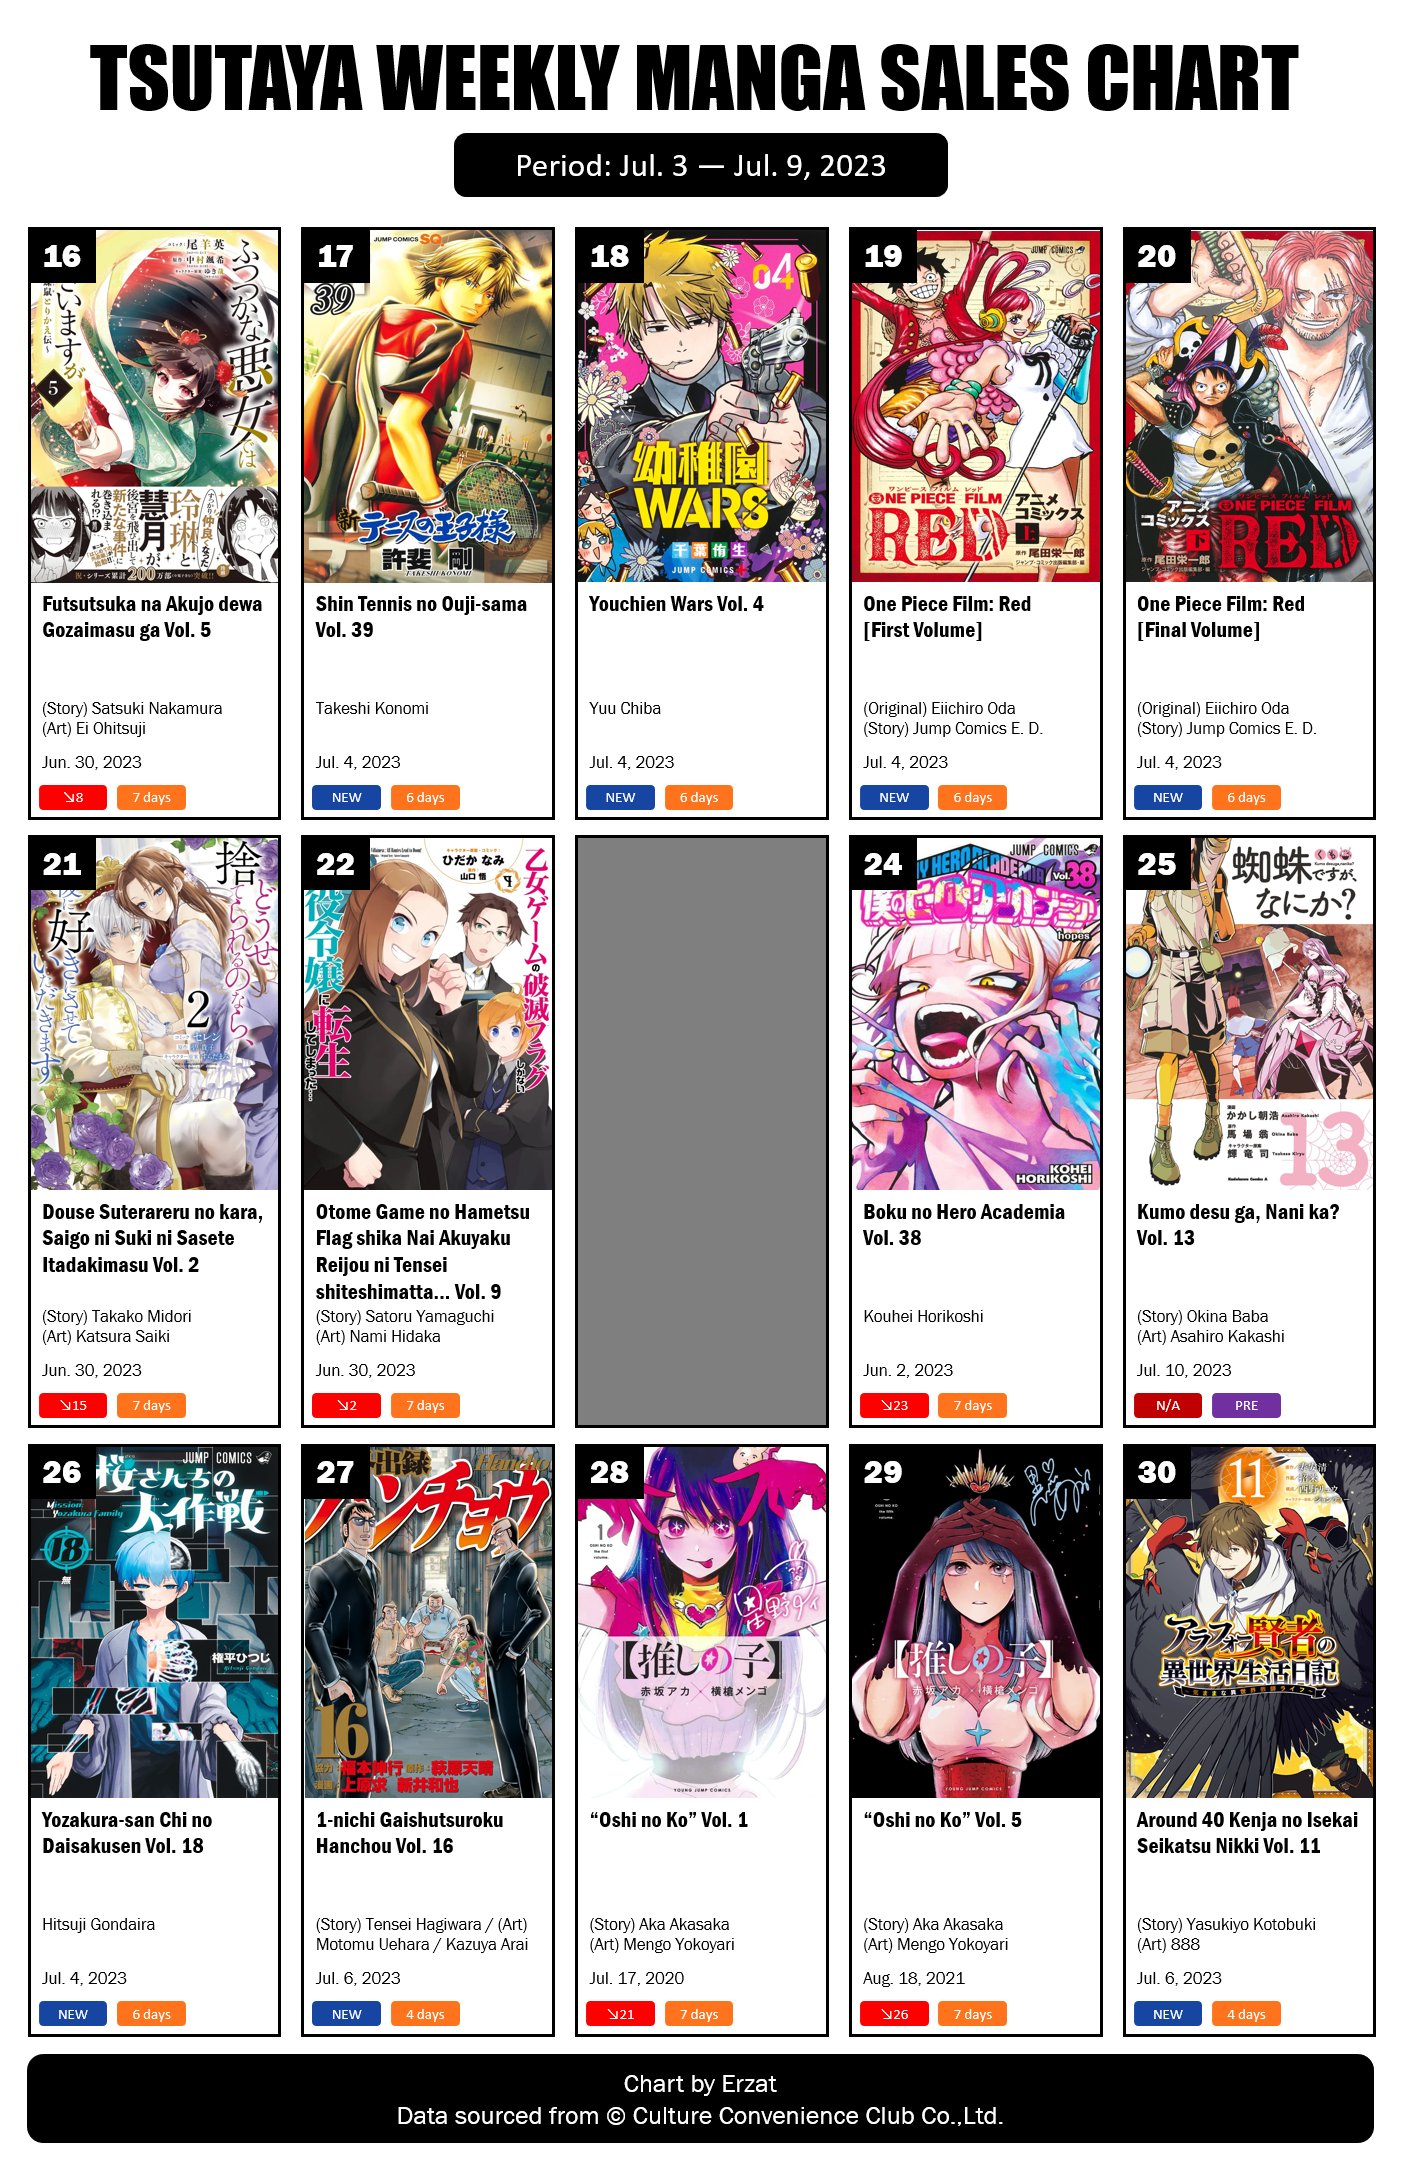 TSUTAYA Weekly Manga Sales Ranking: December 12 - December 18